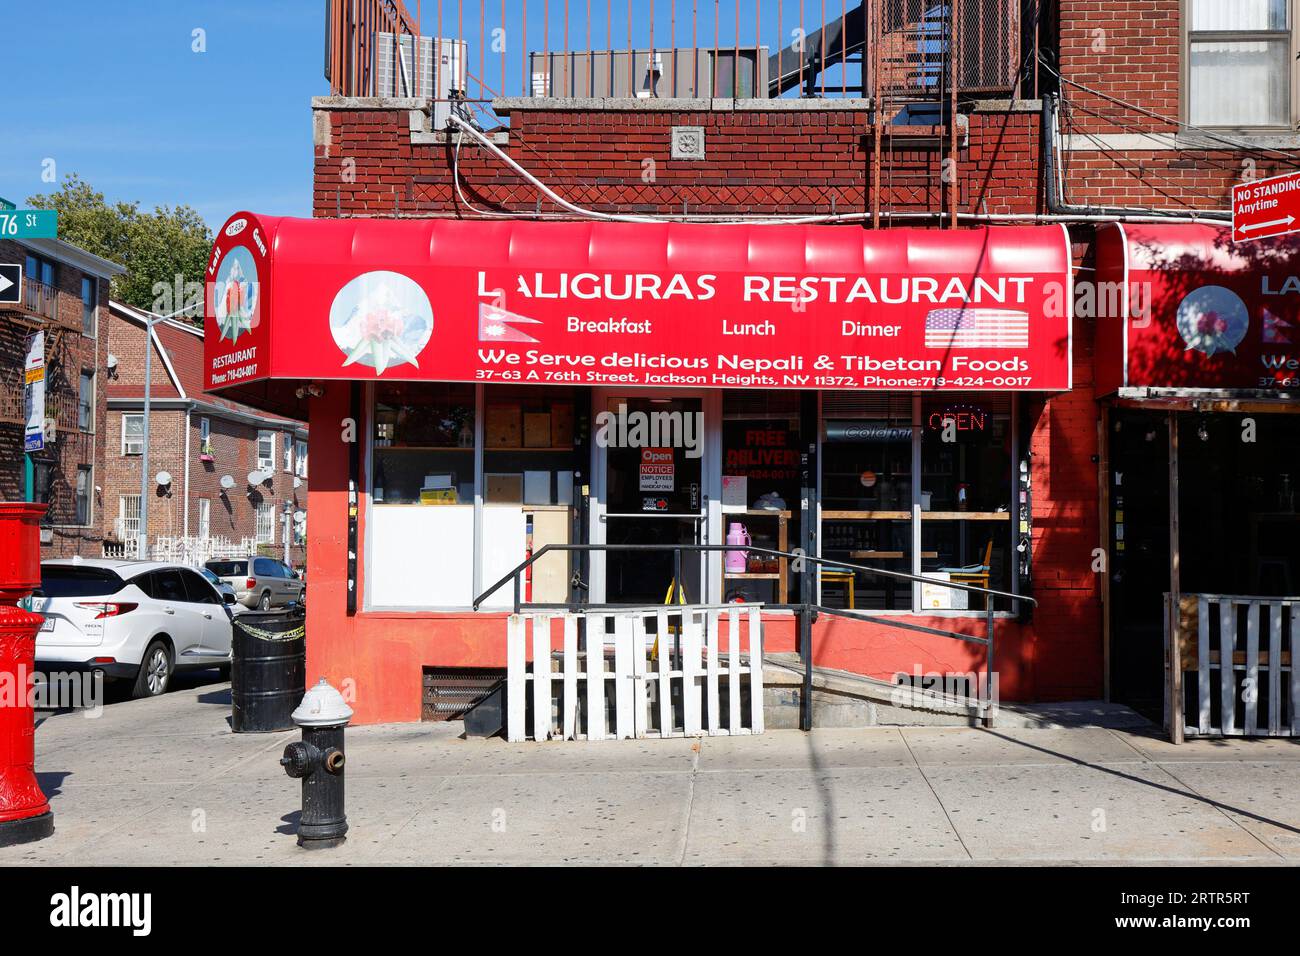 Restaurant Laliguras, 37-63 76th St, Queens, New York. Photo de la vitrine de New York d'un restaurant népalais et tibétain dans le quartier de Jackson Heights Banque D'Images